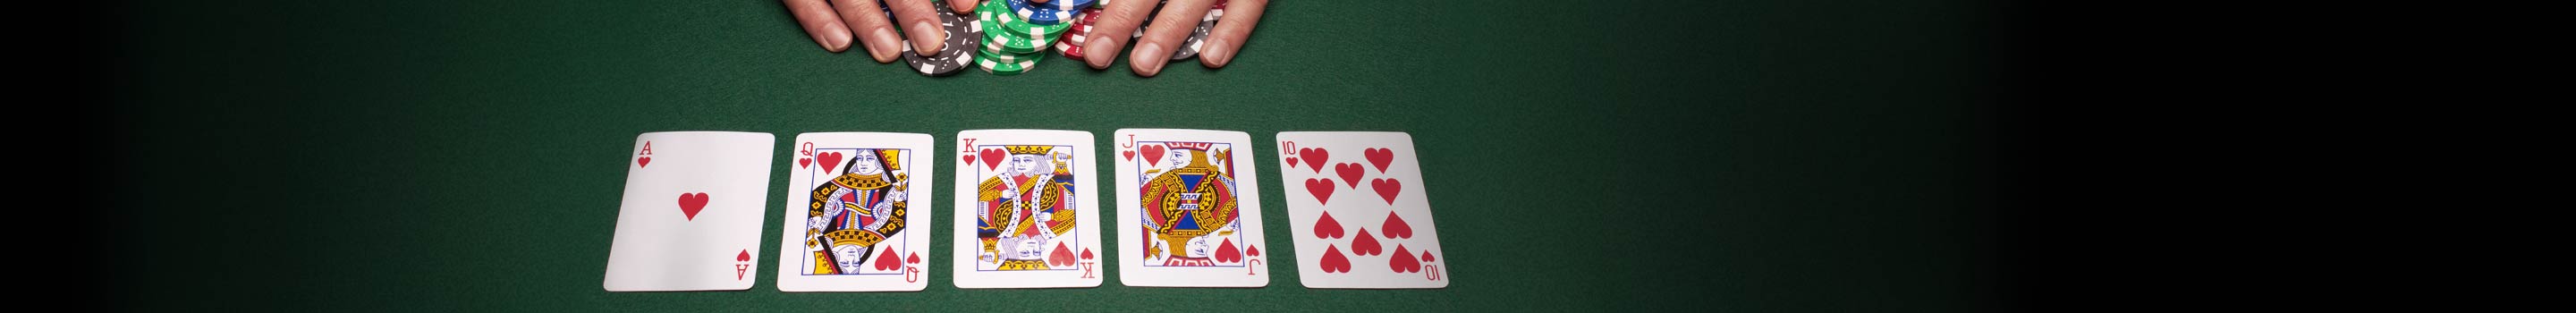 Poker hand ranking